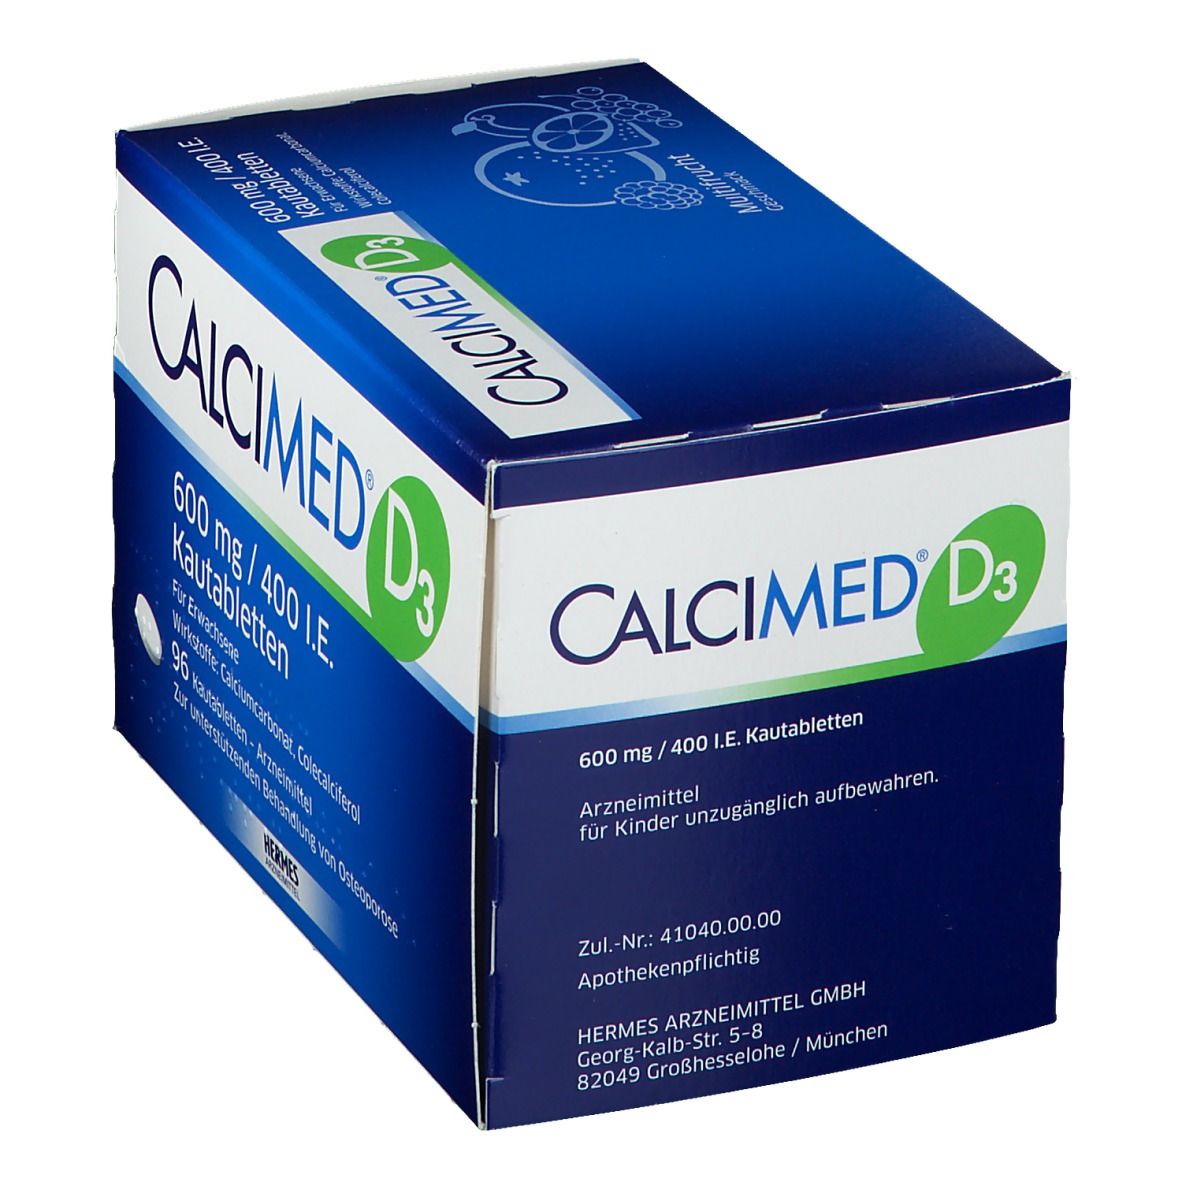 CALCIMED® D3 600 mg/400 I.E. Kautabletten